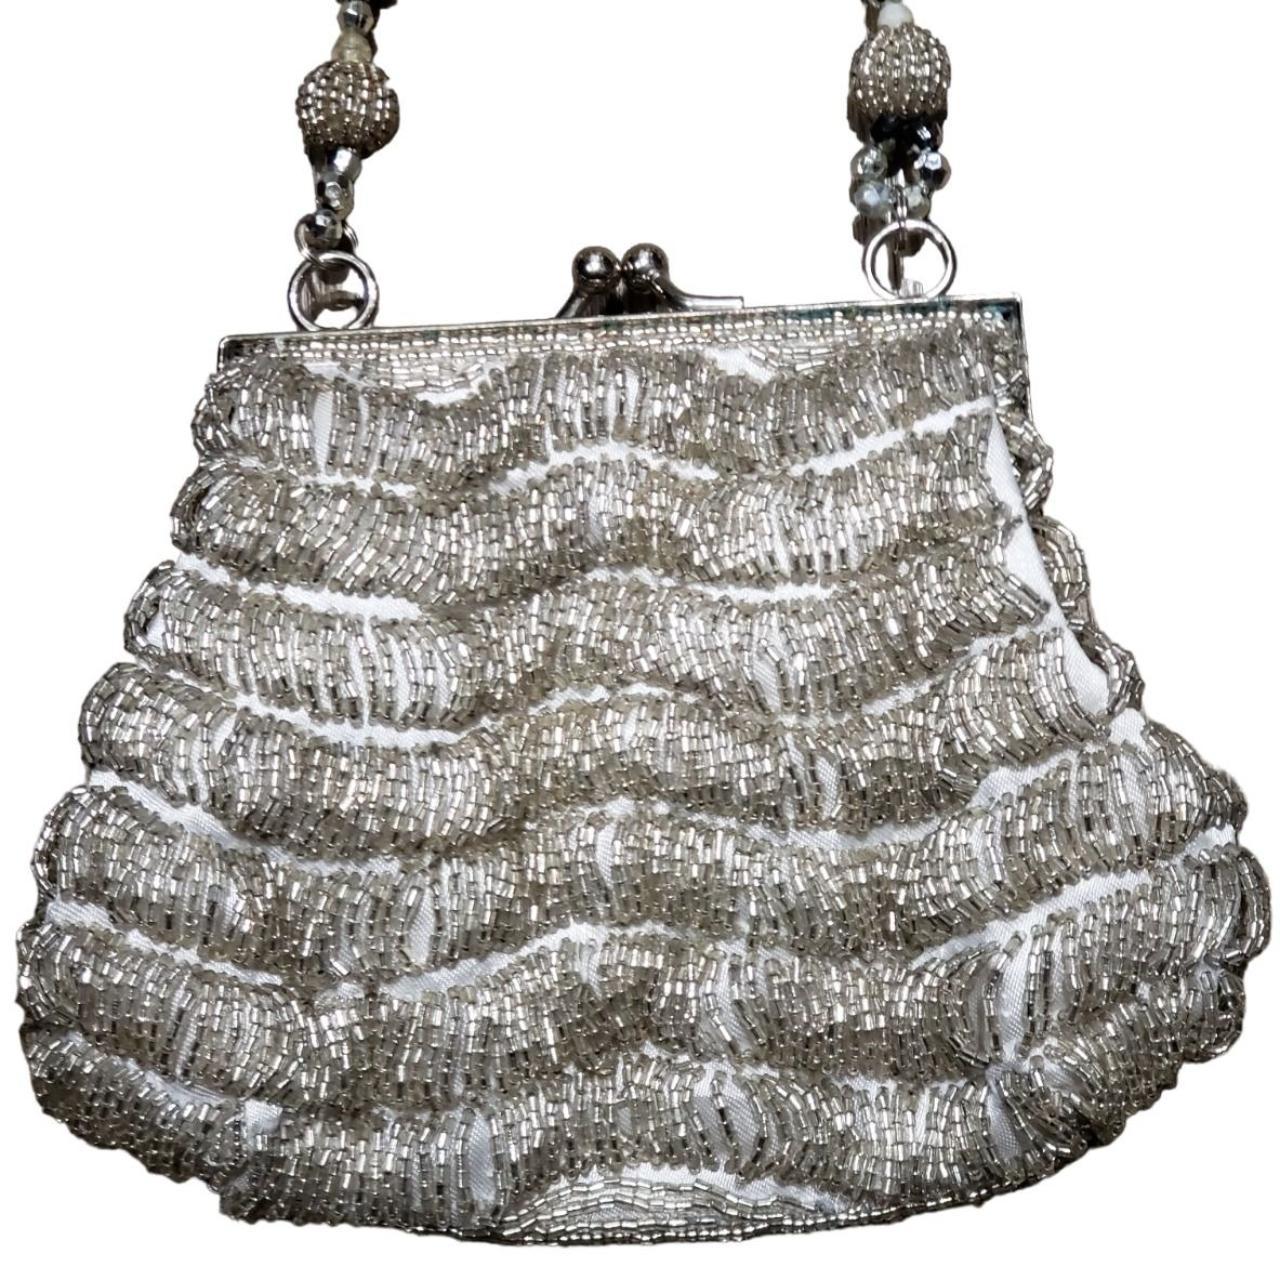 VTG Bronze Shell Beaded Evening Bag (w/ MATCHING - Depop